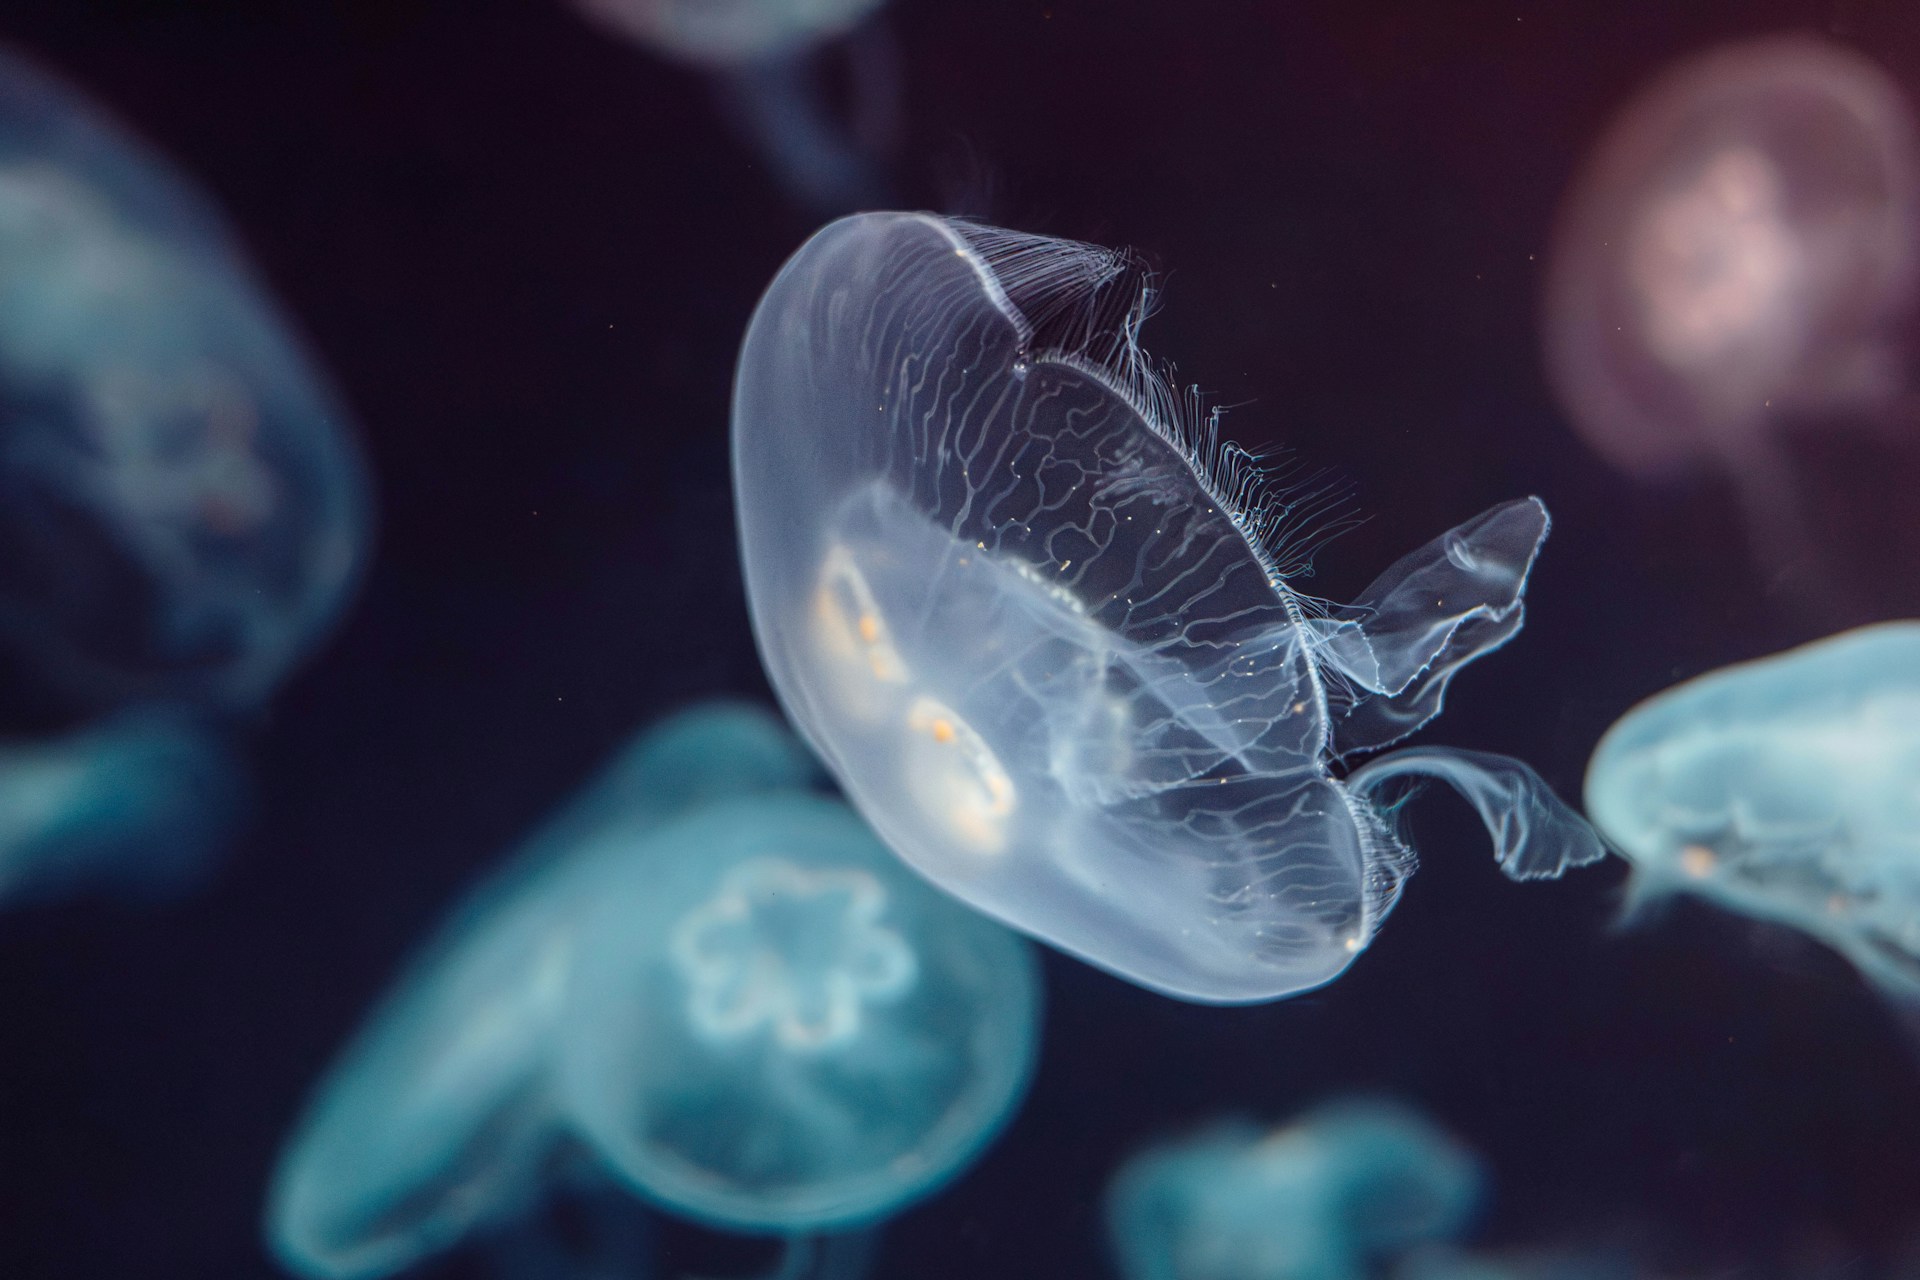 Las medusas habitan la zona afótica de los océanos. Por lo tanto pertenecen a la fauna abisal, dentro de los animales marinos.